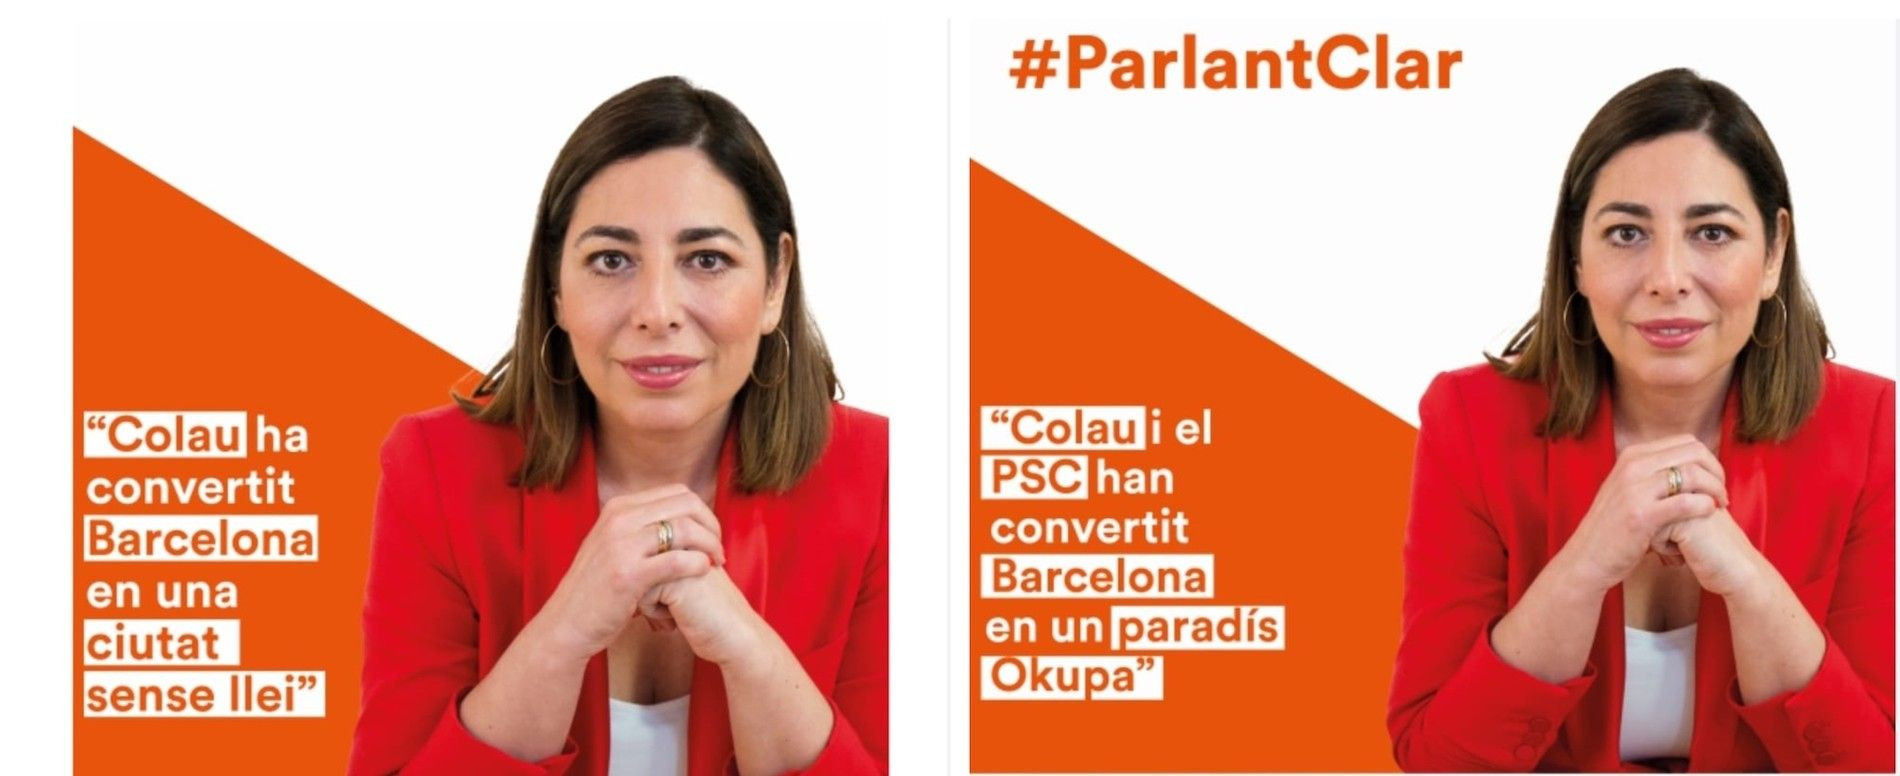 Dos carteles de la campaña de Ciutadans, que Colau quiere vetar, según el partido naranja / CIUTADANS